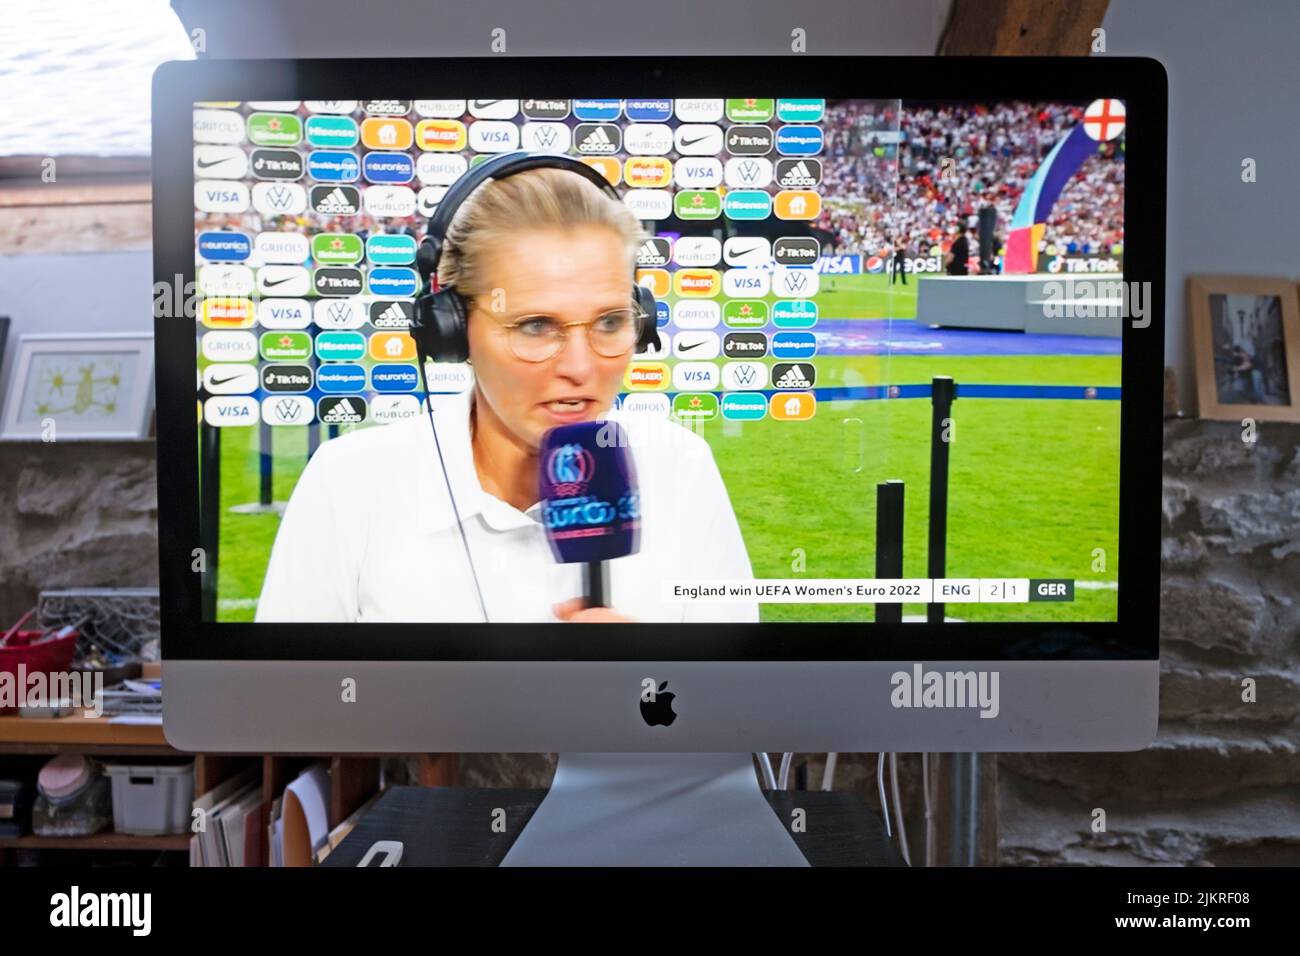 La entrenadora de fútbol femenina de la Leona de Inglaterra Sarina Wiegman siendo entrevistada en la pantalla en el estadio de Wembley después de ganar contra Alemania 31 de julio de 2022 Londres Reino Unido Foto de stock